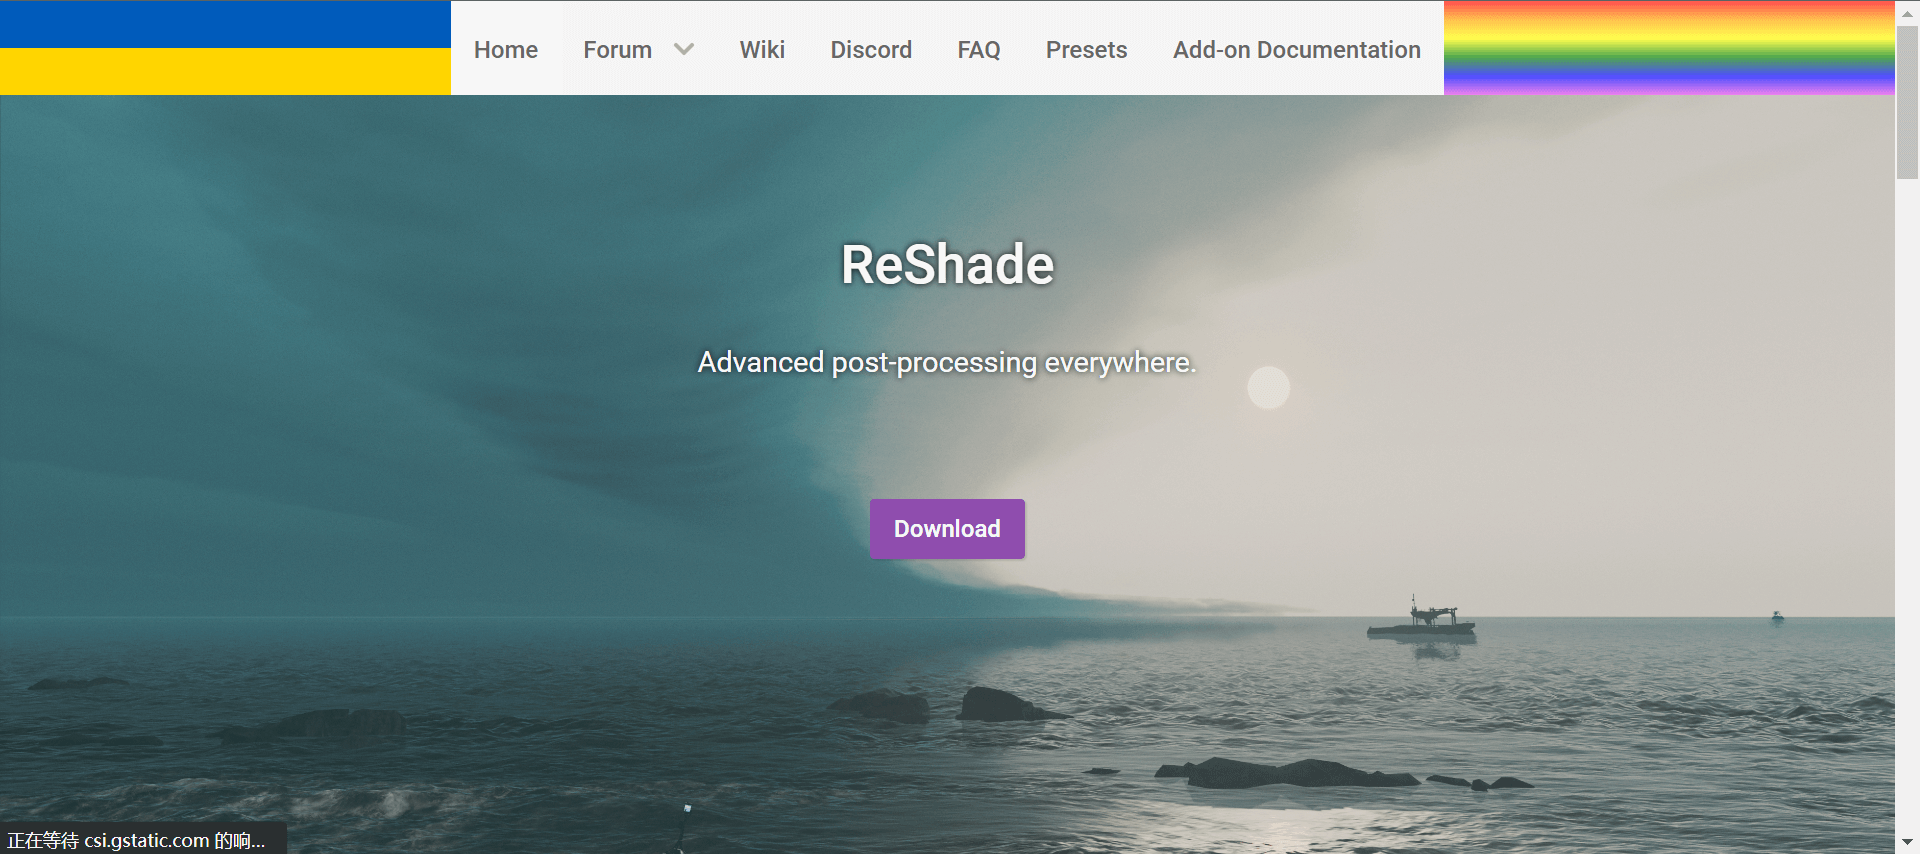 Reshade’s website